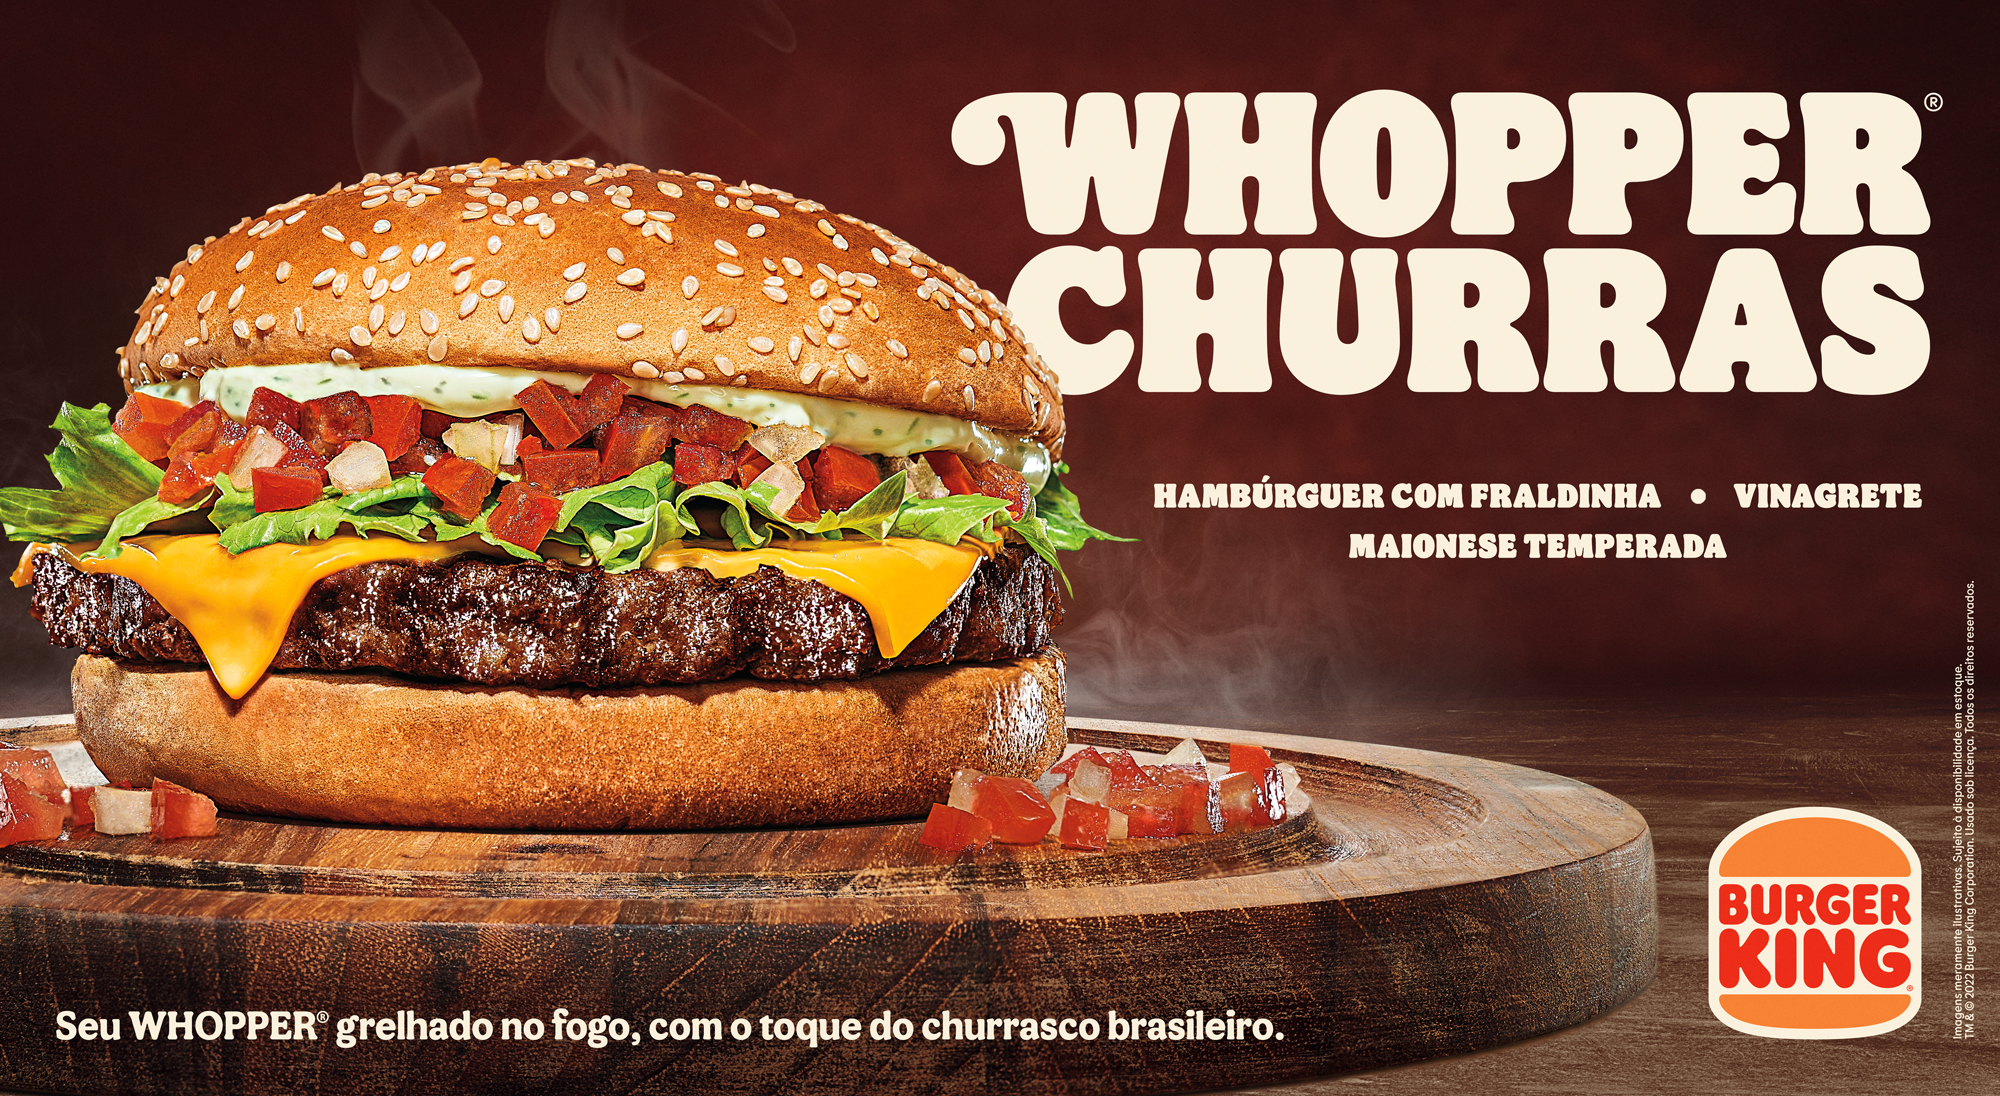 Burger King Brasil - O Anúncio Grelhado do BK voltou! Corre lá no